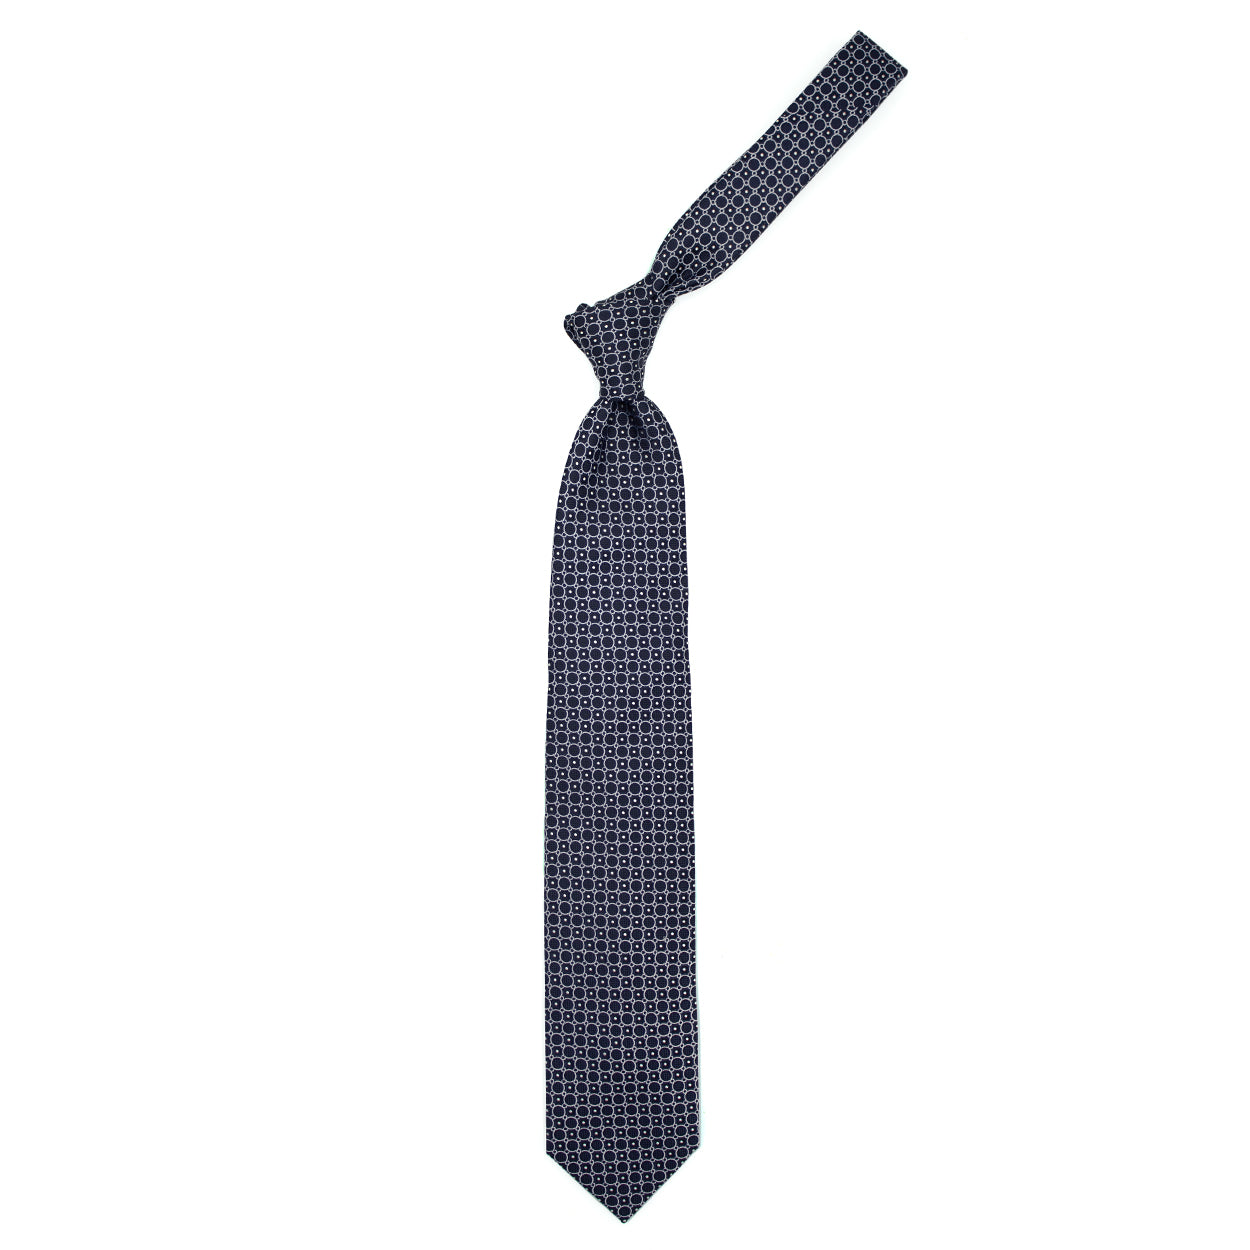 Cravatta blu con cerchi e pallini bianchi